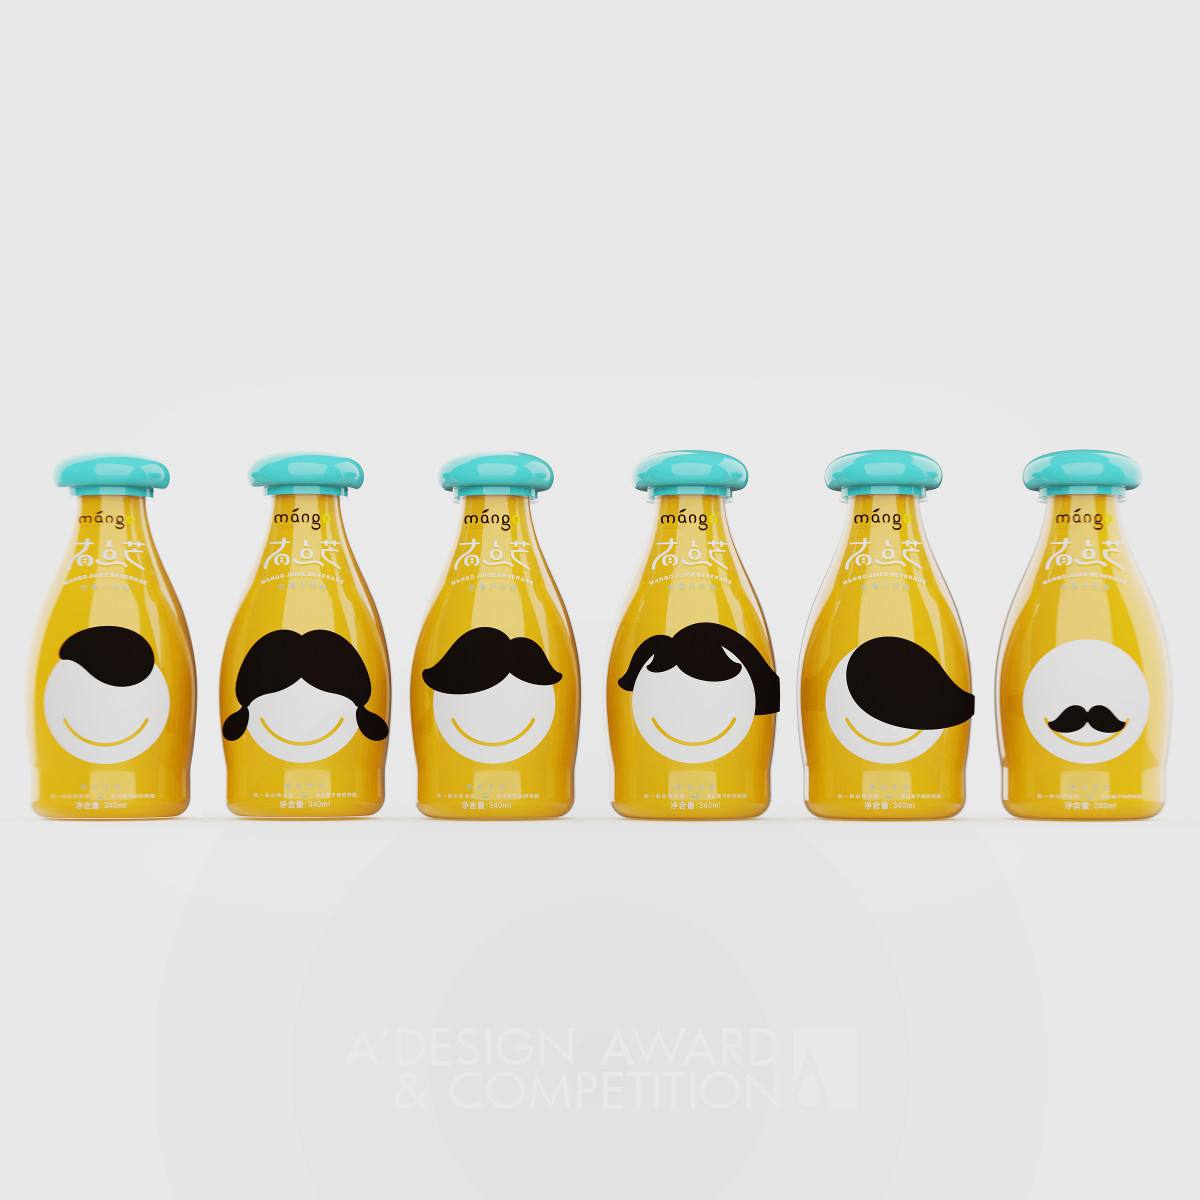 A Bit Busy Mango Juice Packaging Design by Zhou Jingkuan